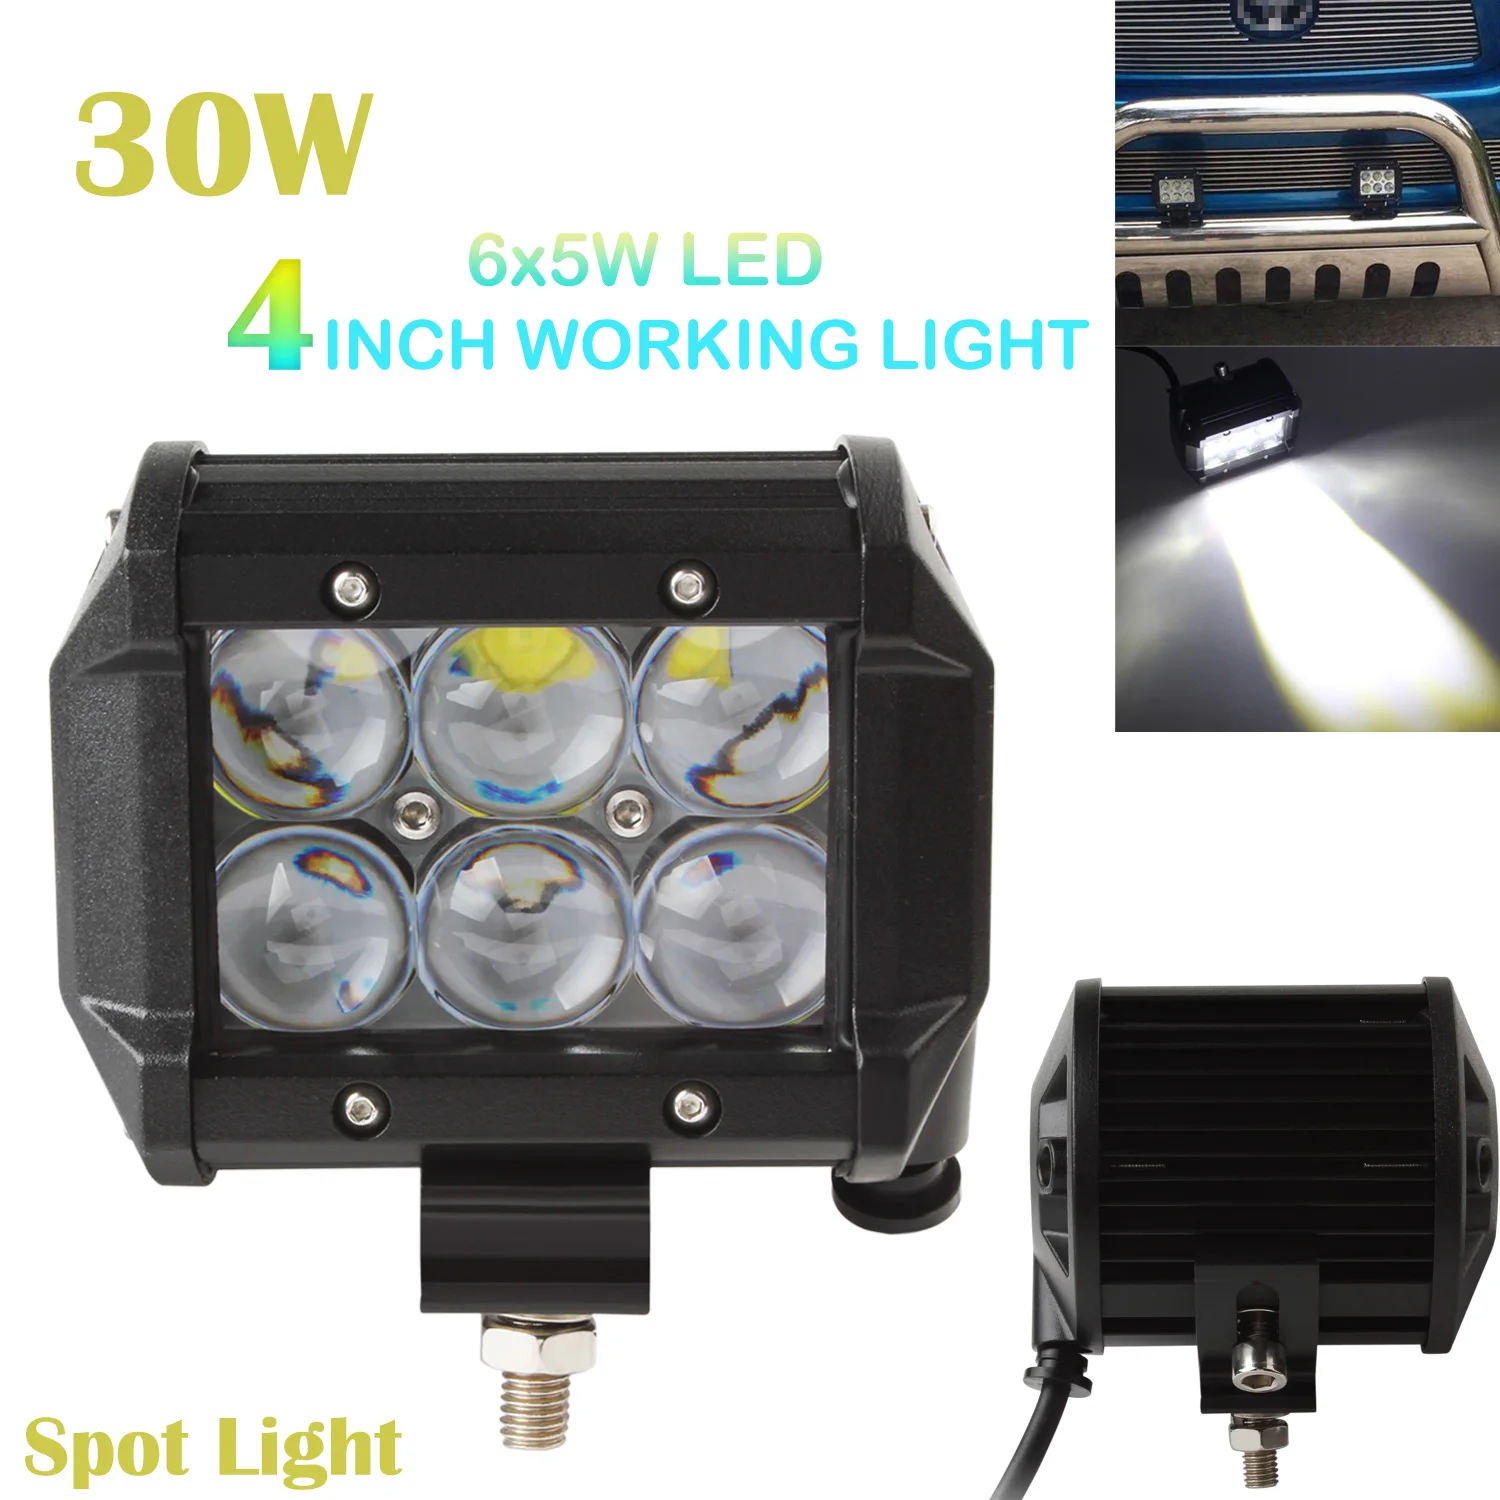 4 İnç Araç 30W 2550LM 4WDLED çalışma spot ışık çubuğu beyaz ışık 6000K 6 Leds 4WD ATV Off-road SUV sürüş lambası araba araçlar için